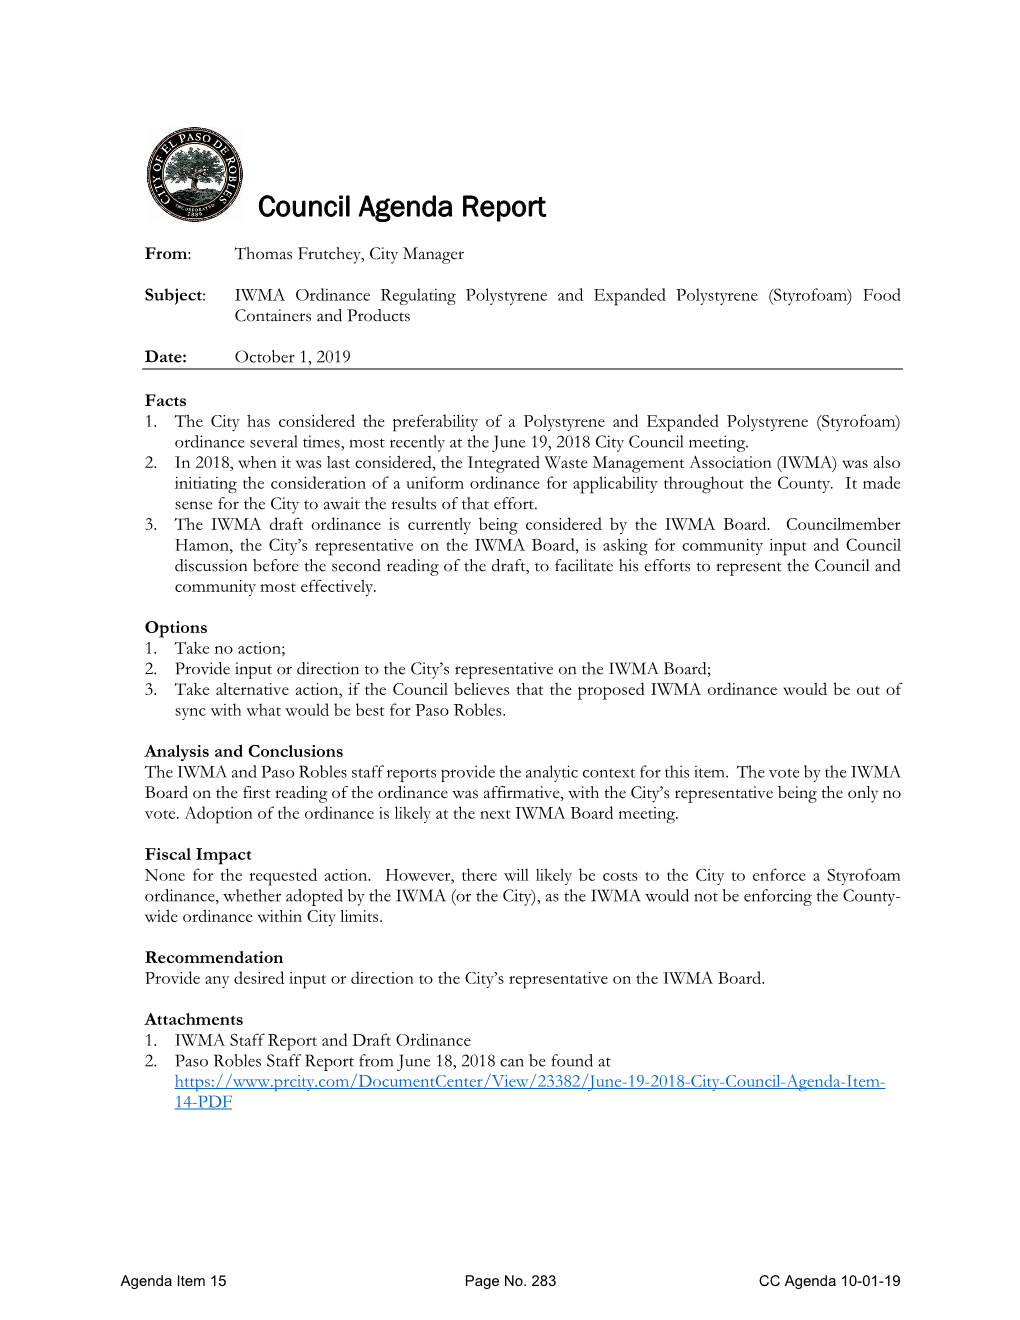 October 1, 2019 City Council Agenda Item 15